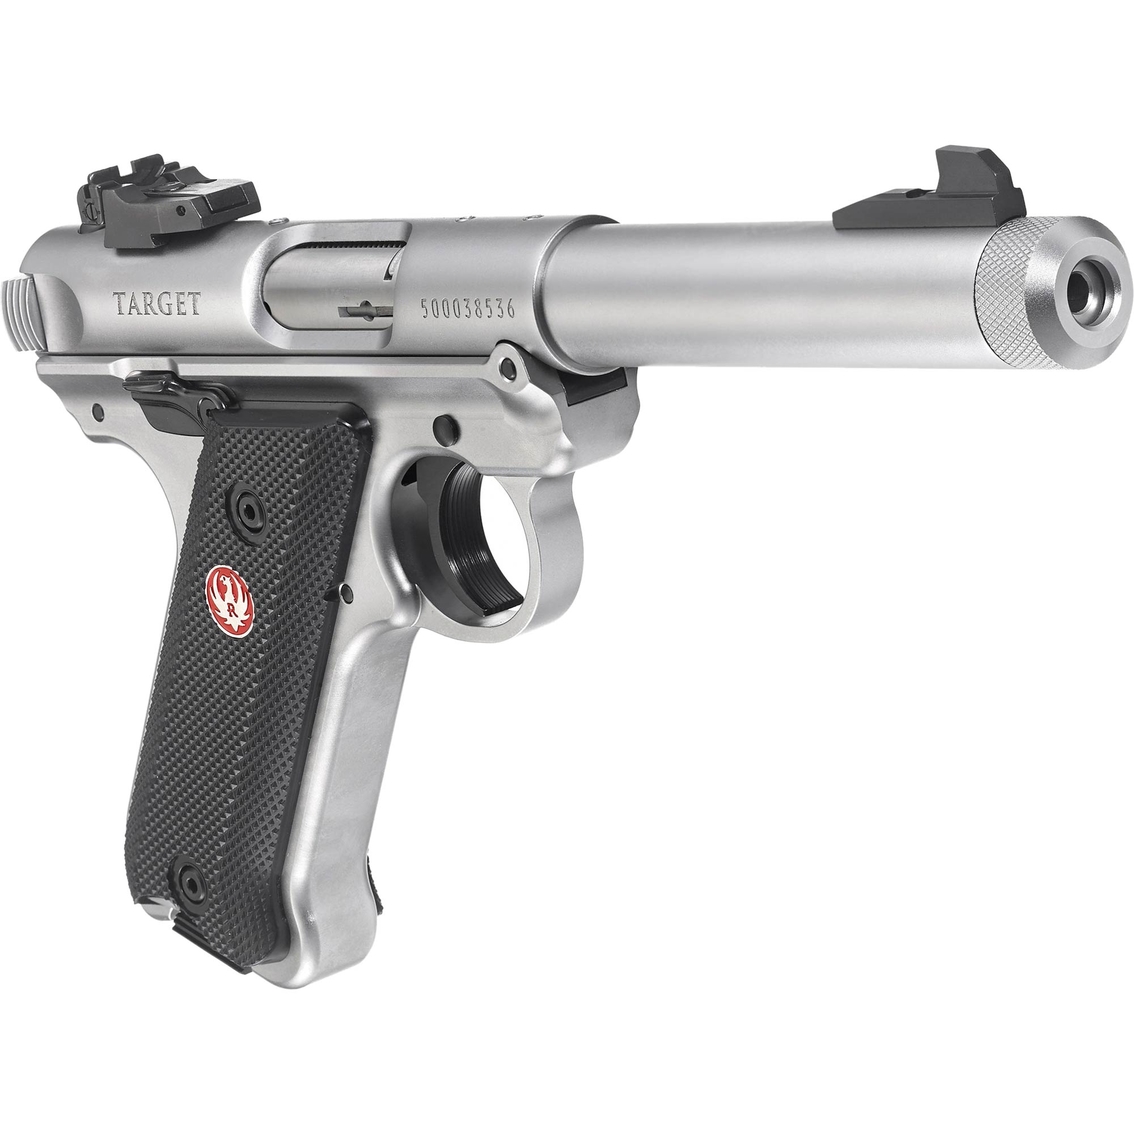 Ruger Mark IV Target 22 LR 5.5 in. Barrel 10 Rnd Pistol Stainless Steel - Image 2 of 2